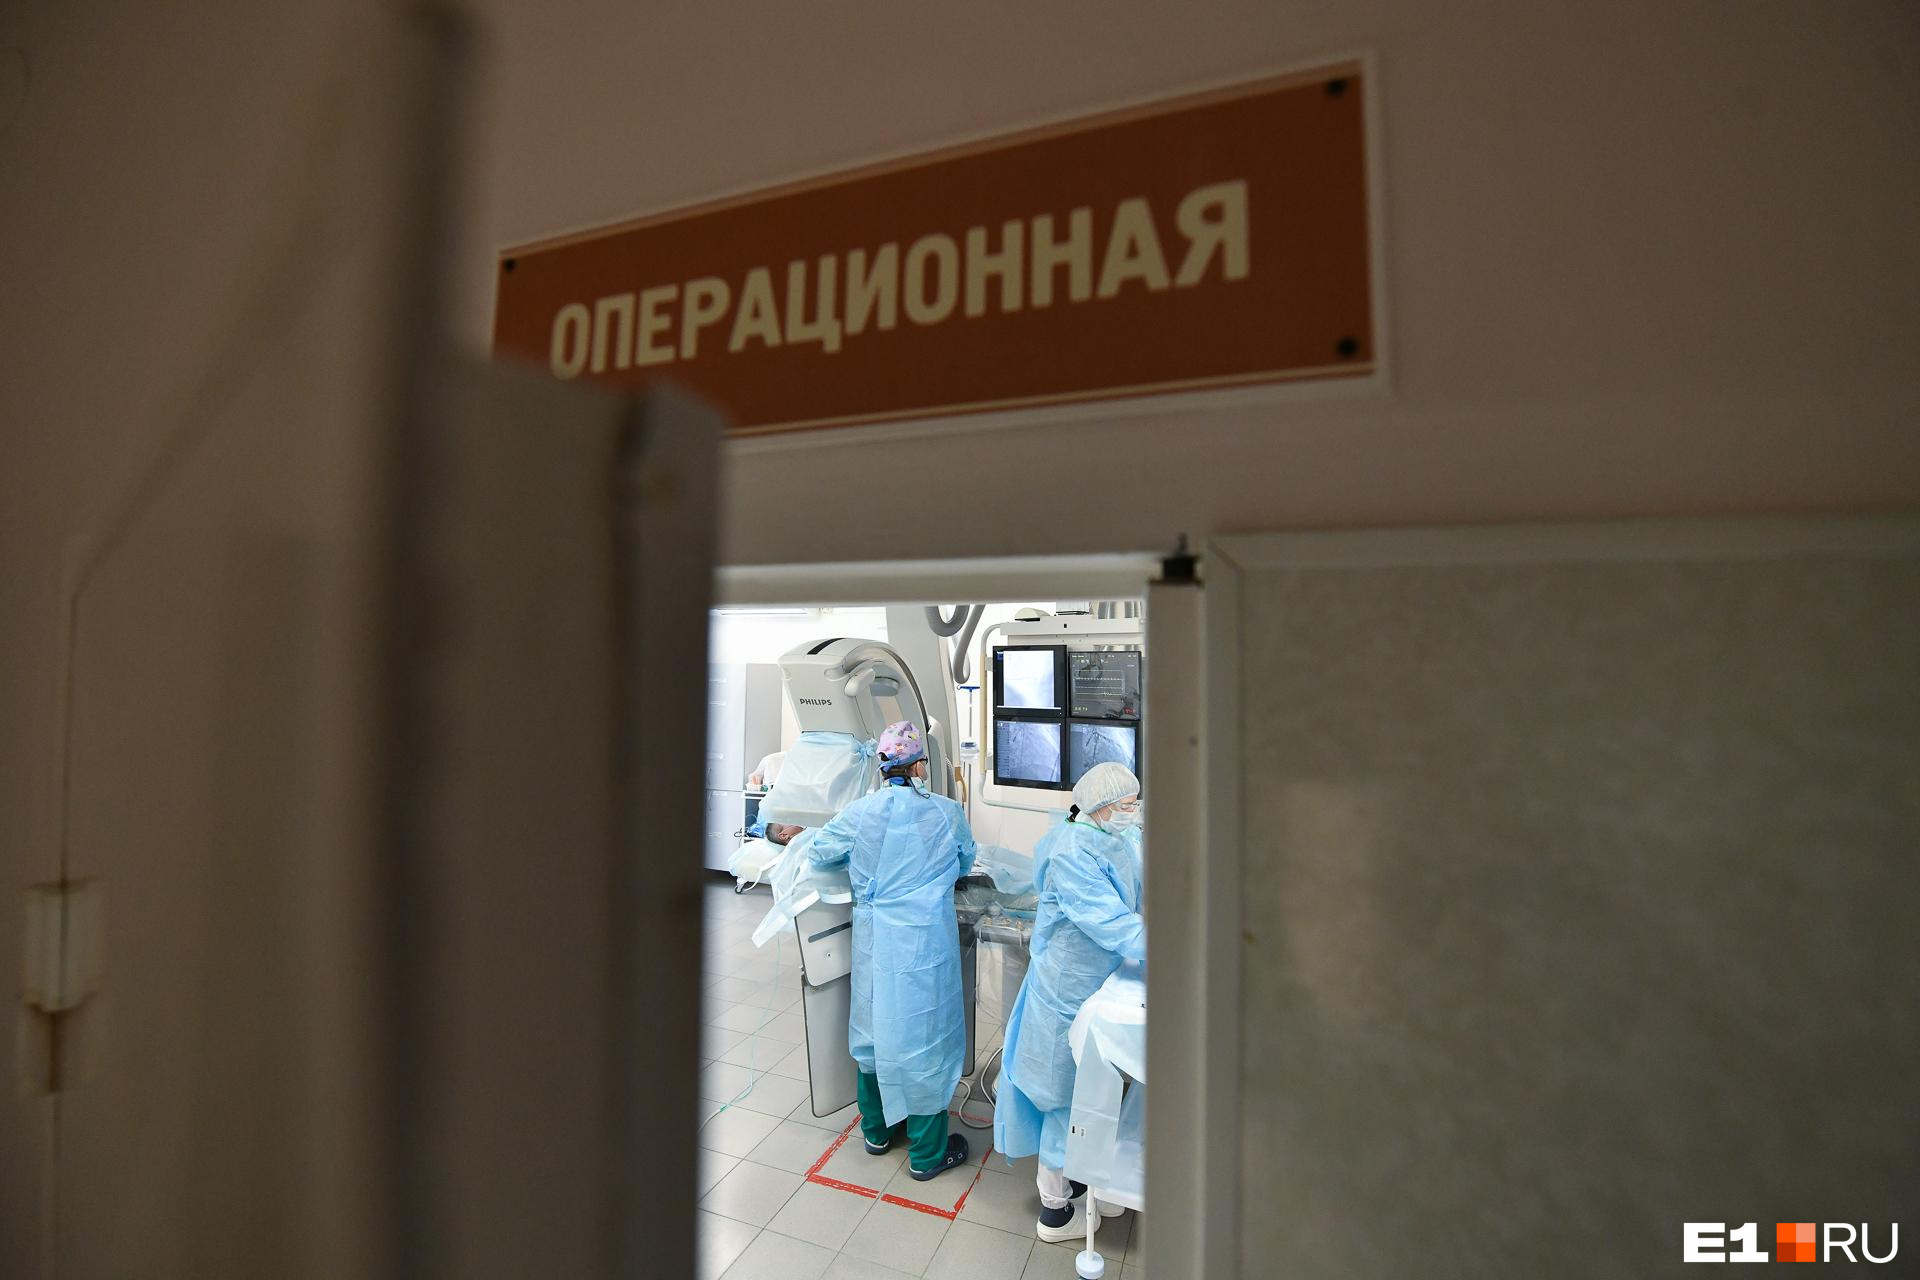 Кузбасские медики вытащили осколок снаряда из сердца. Он причинял боль при каждом движении